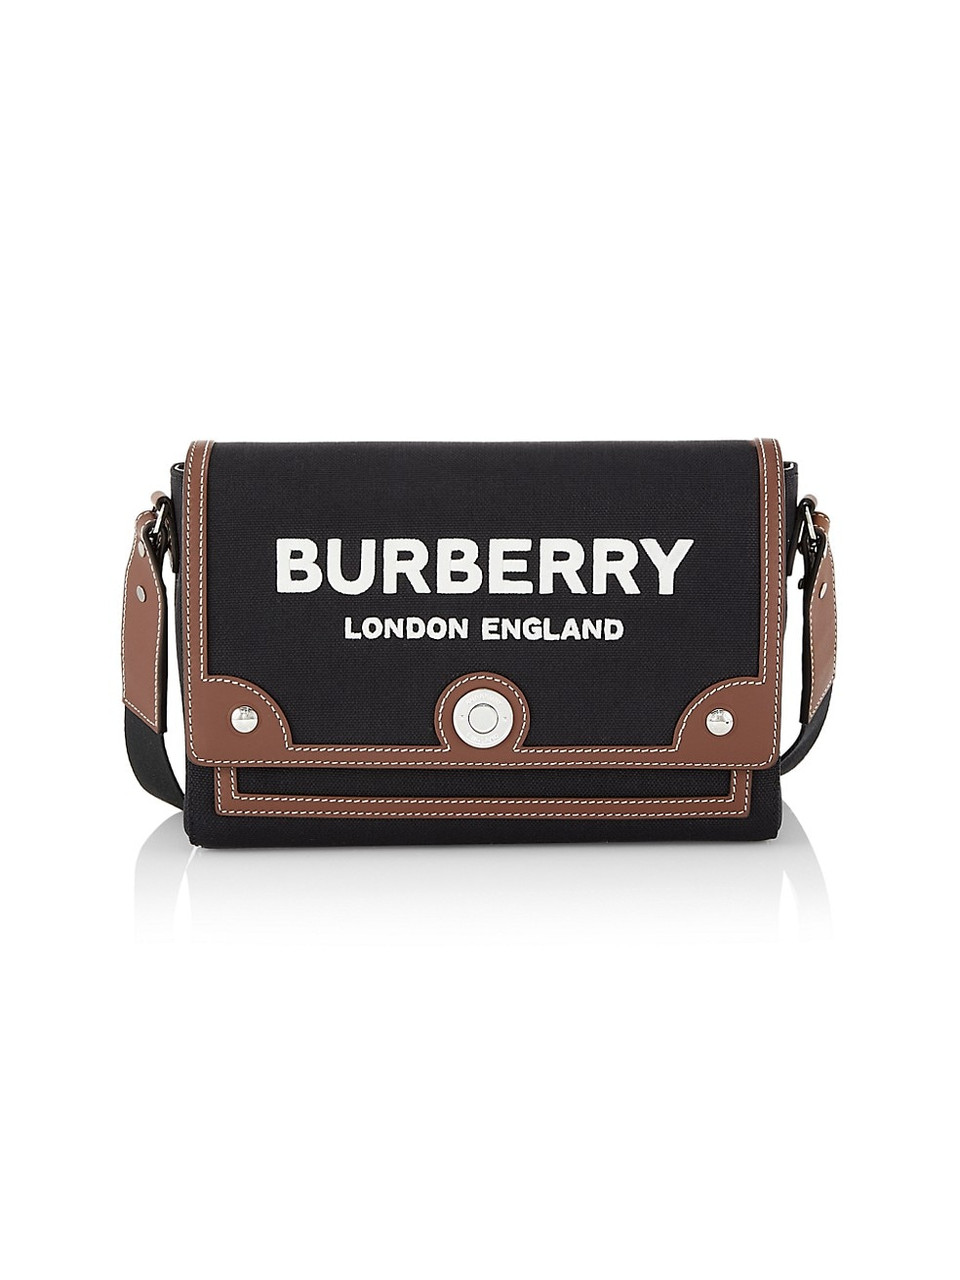 Burberry london handbag plaid - Gem